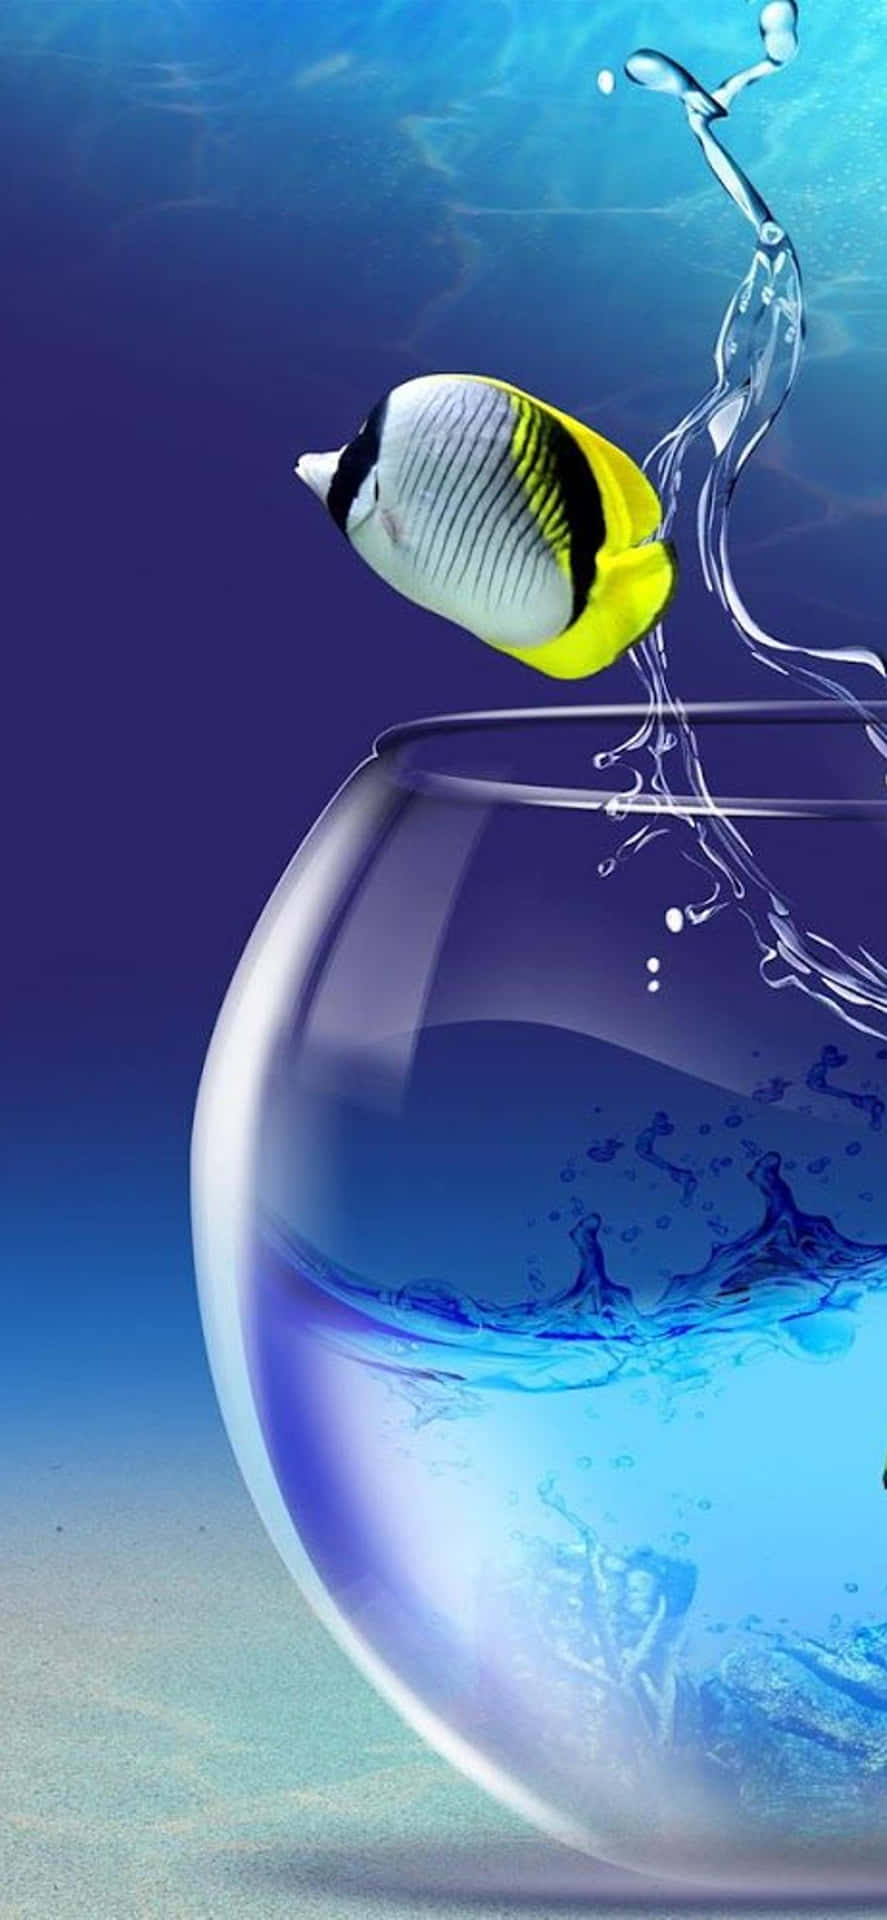 Fisk springer ud af en skål med vand Wallpaper